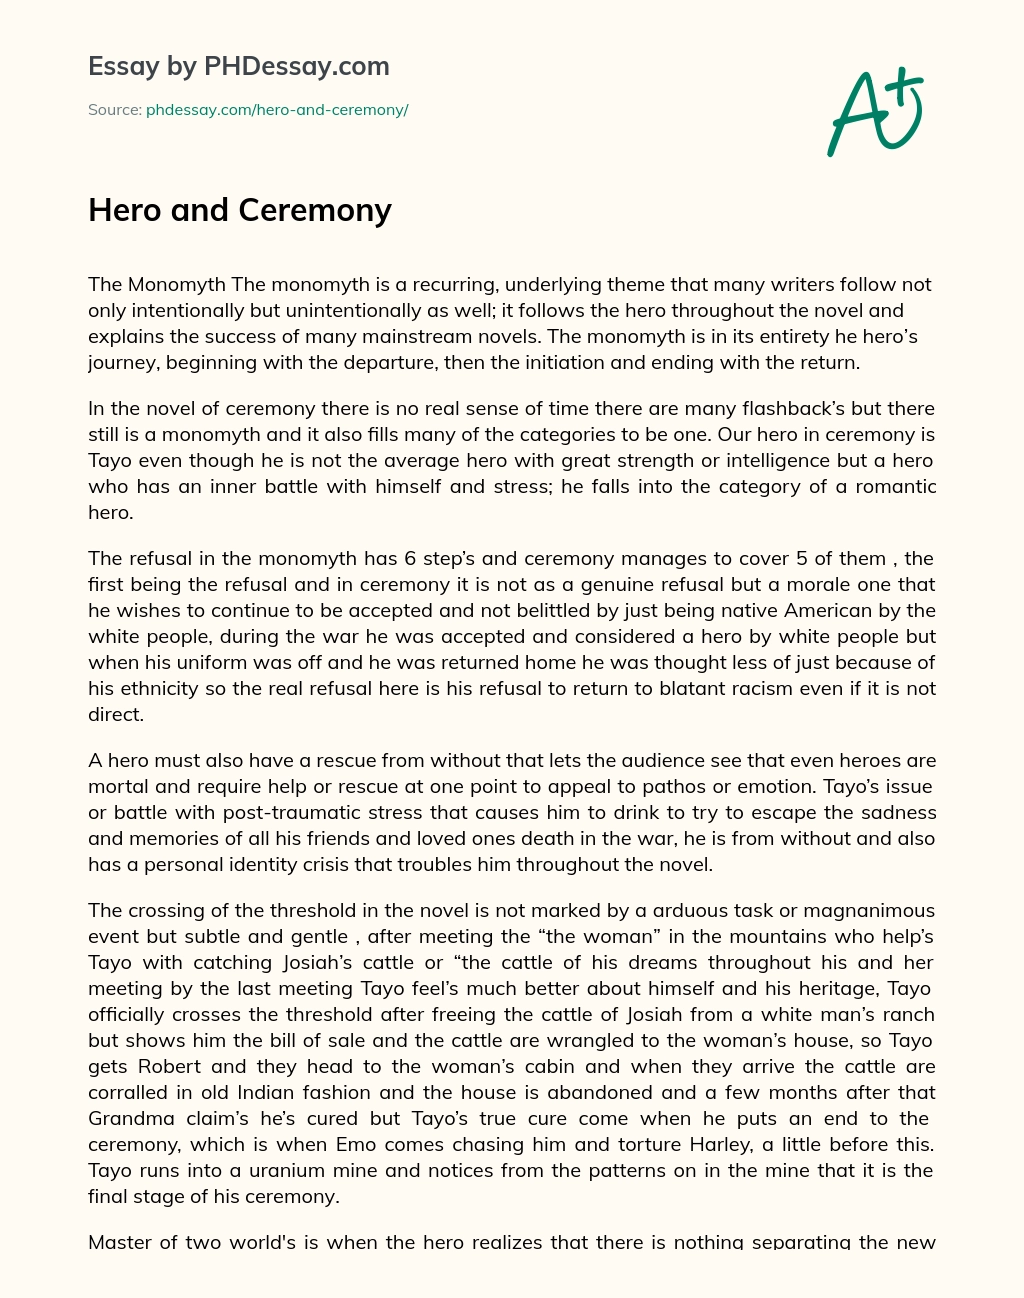 Hero and Ceremony essay